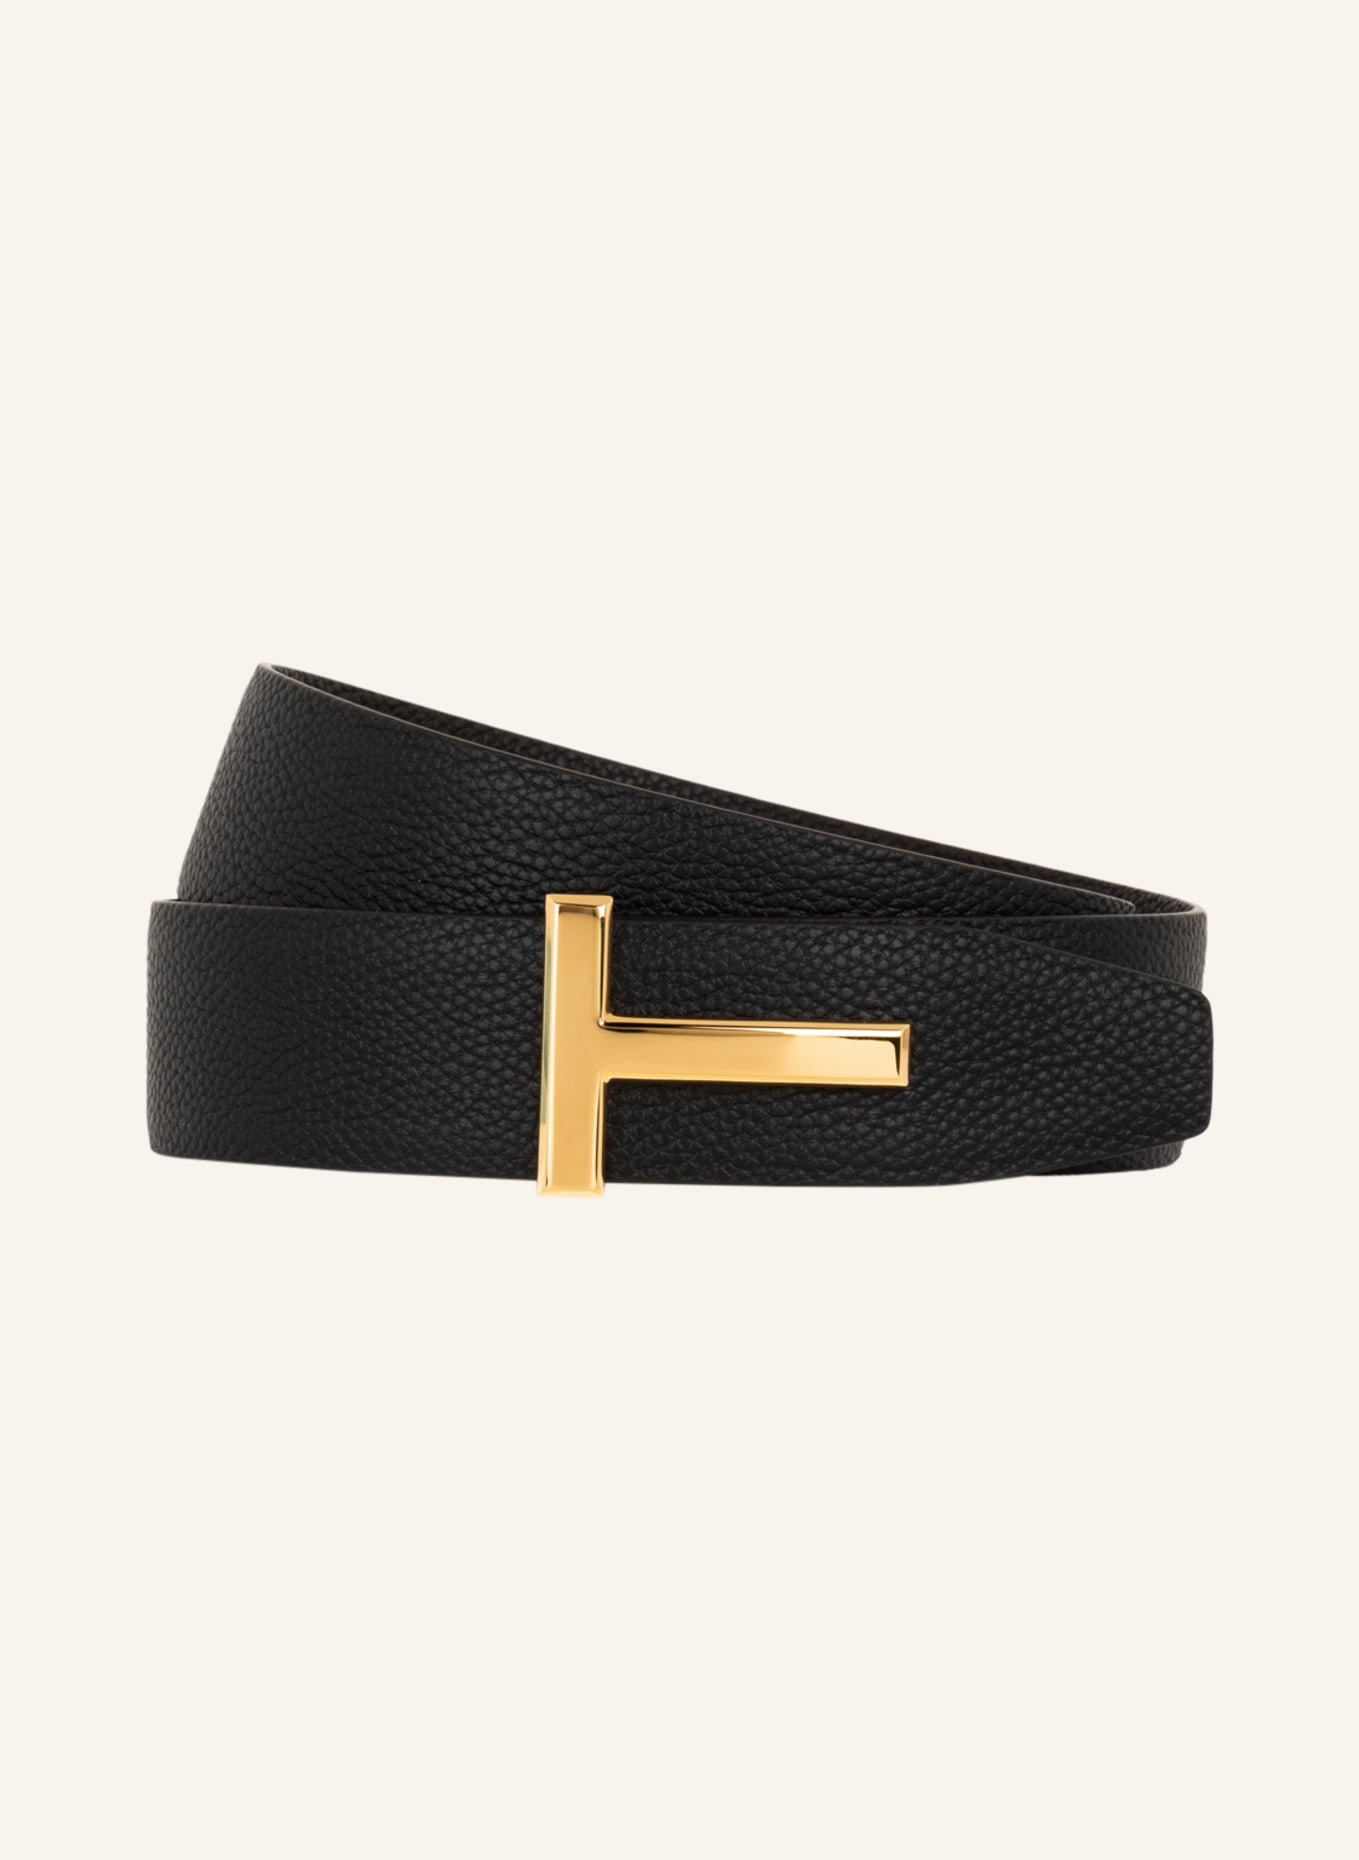 TOM FORD Reversible leather belt, Color: DARK BROWN/ BLACK (Image 1)